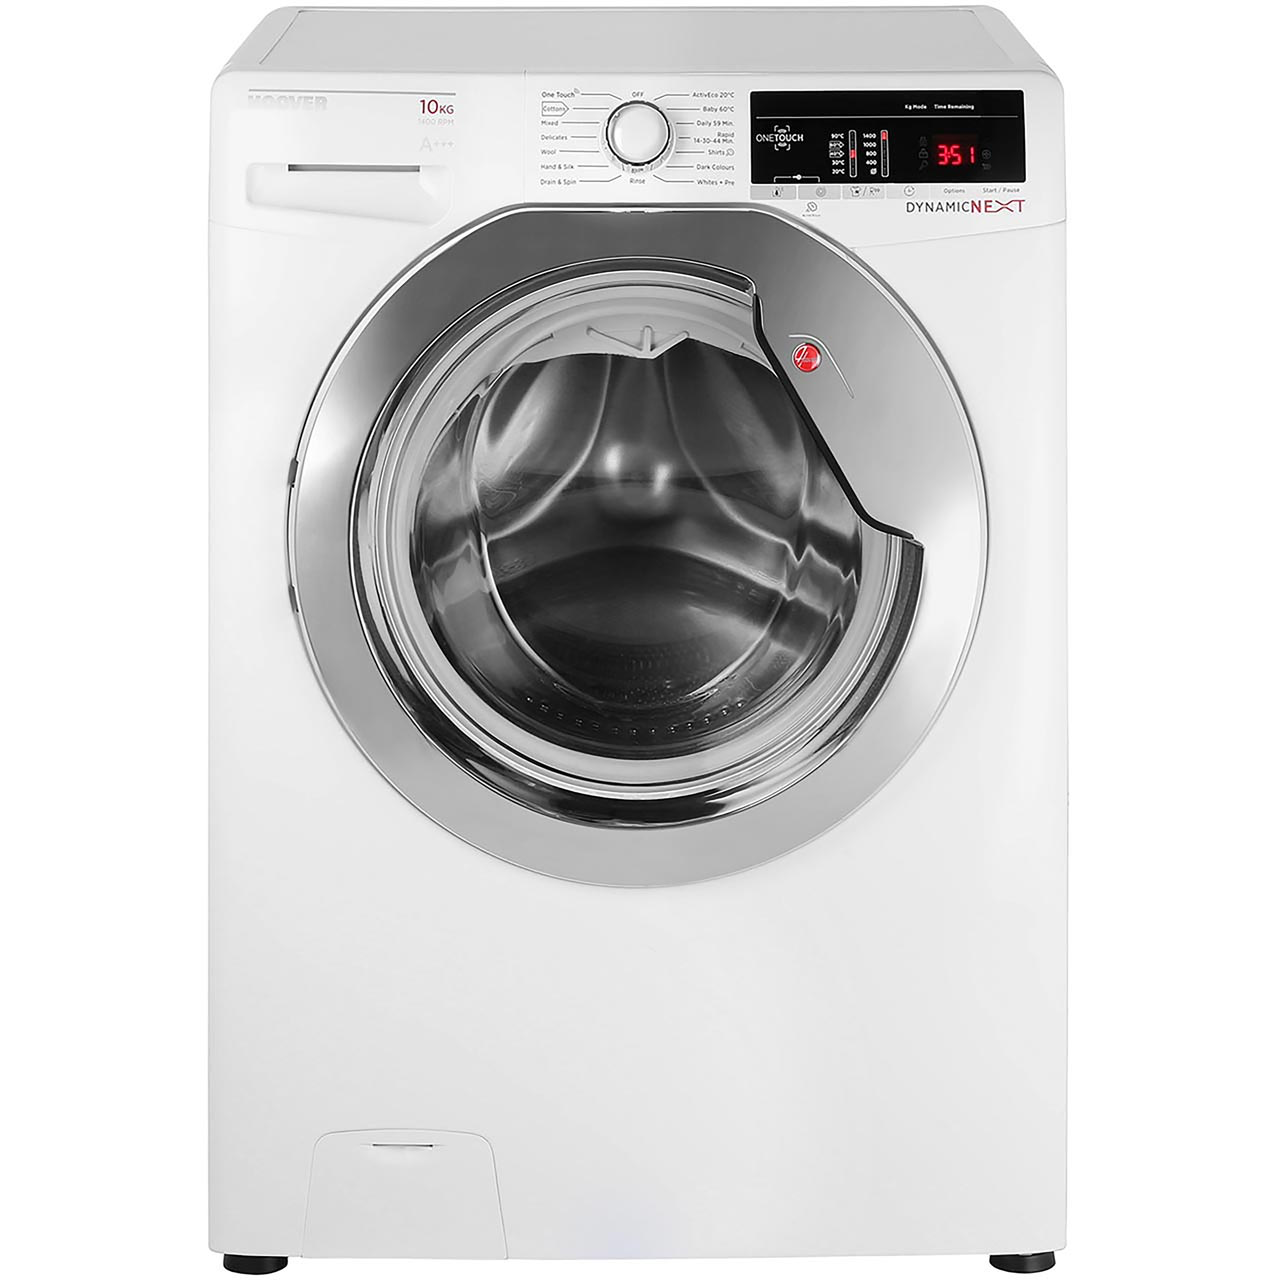 Tussendoortje Treinstation Bedelen Hoover 10kg Washing Machine - DXOC410AC3 - The Appliance Centre Online